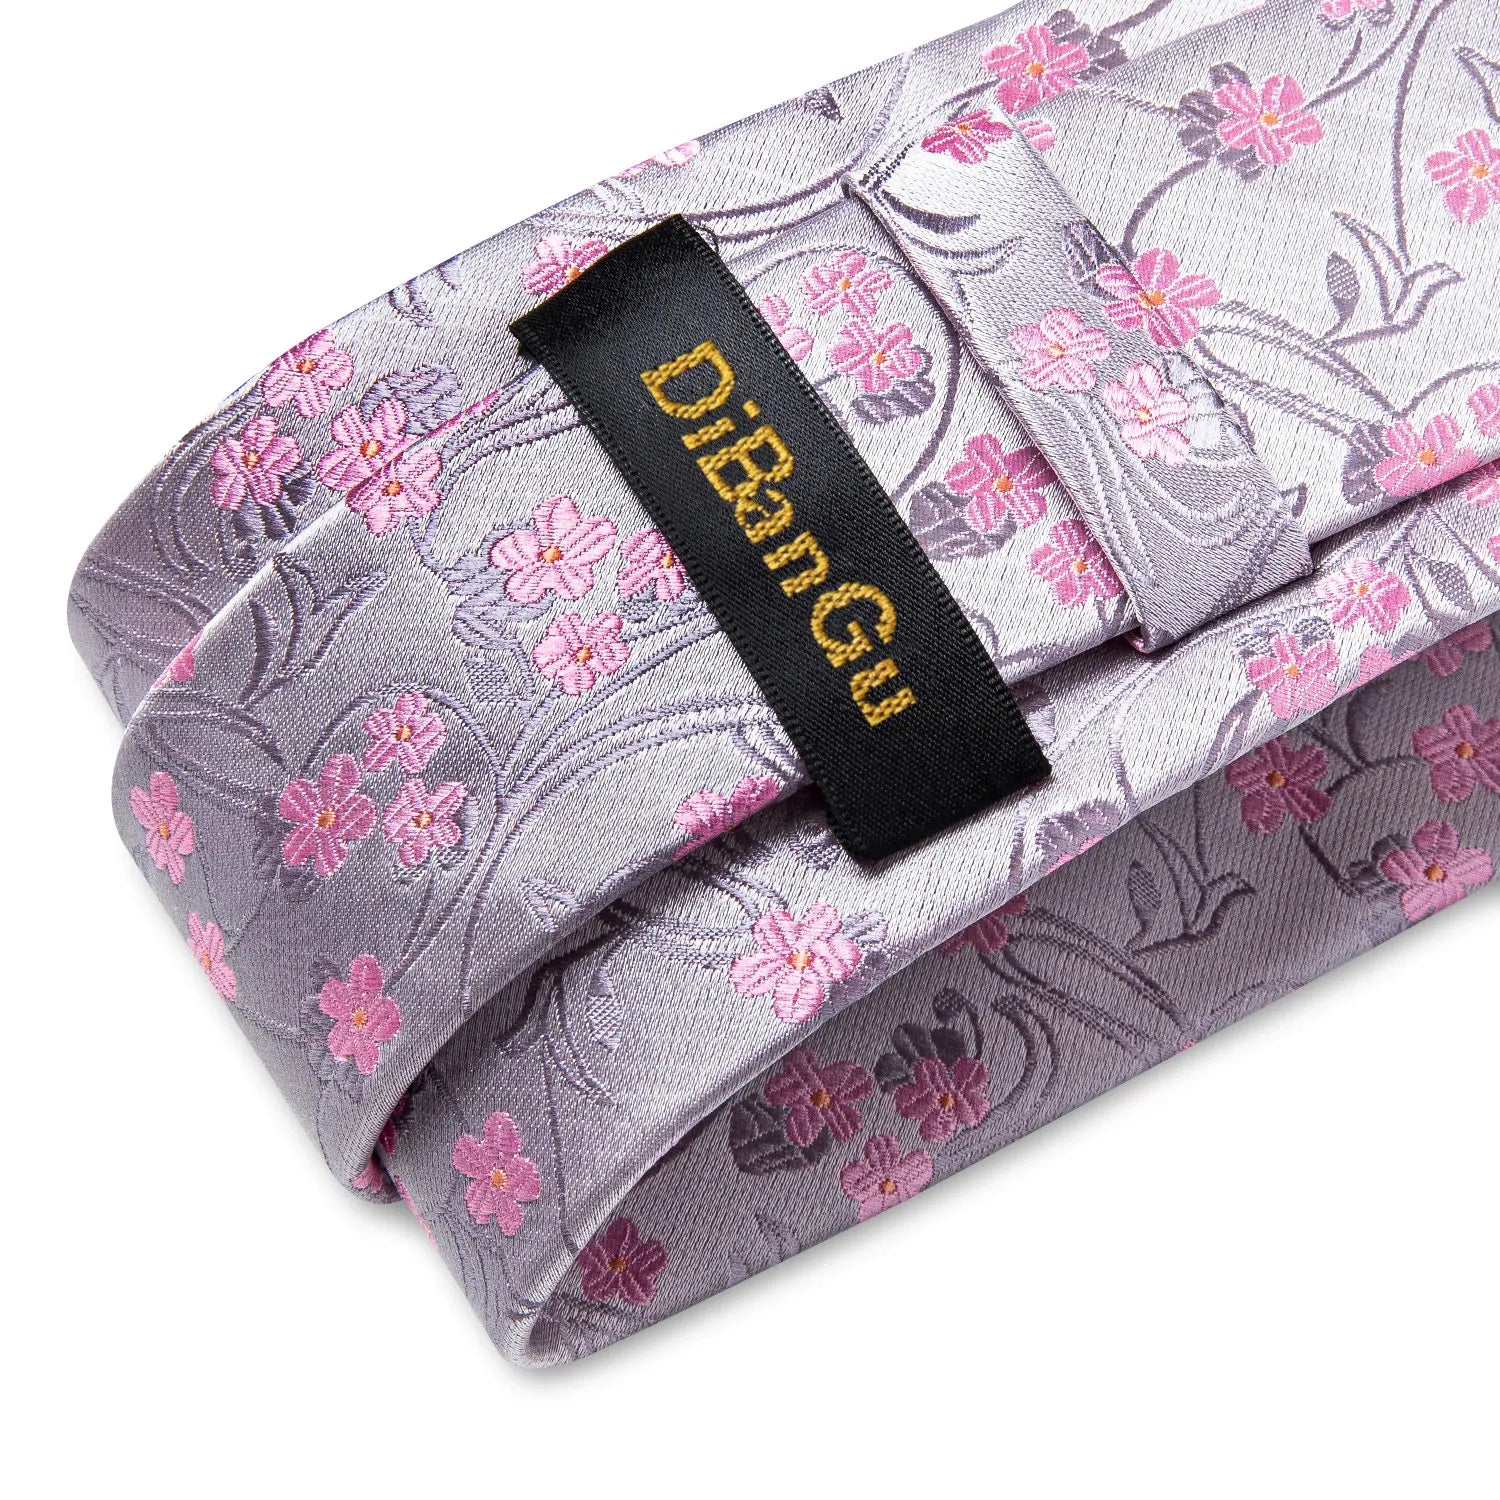 Luxury DiBanGu 100% Silk Floral Pink Necktie with Pocket Square Brooch and Cufflinks Set